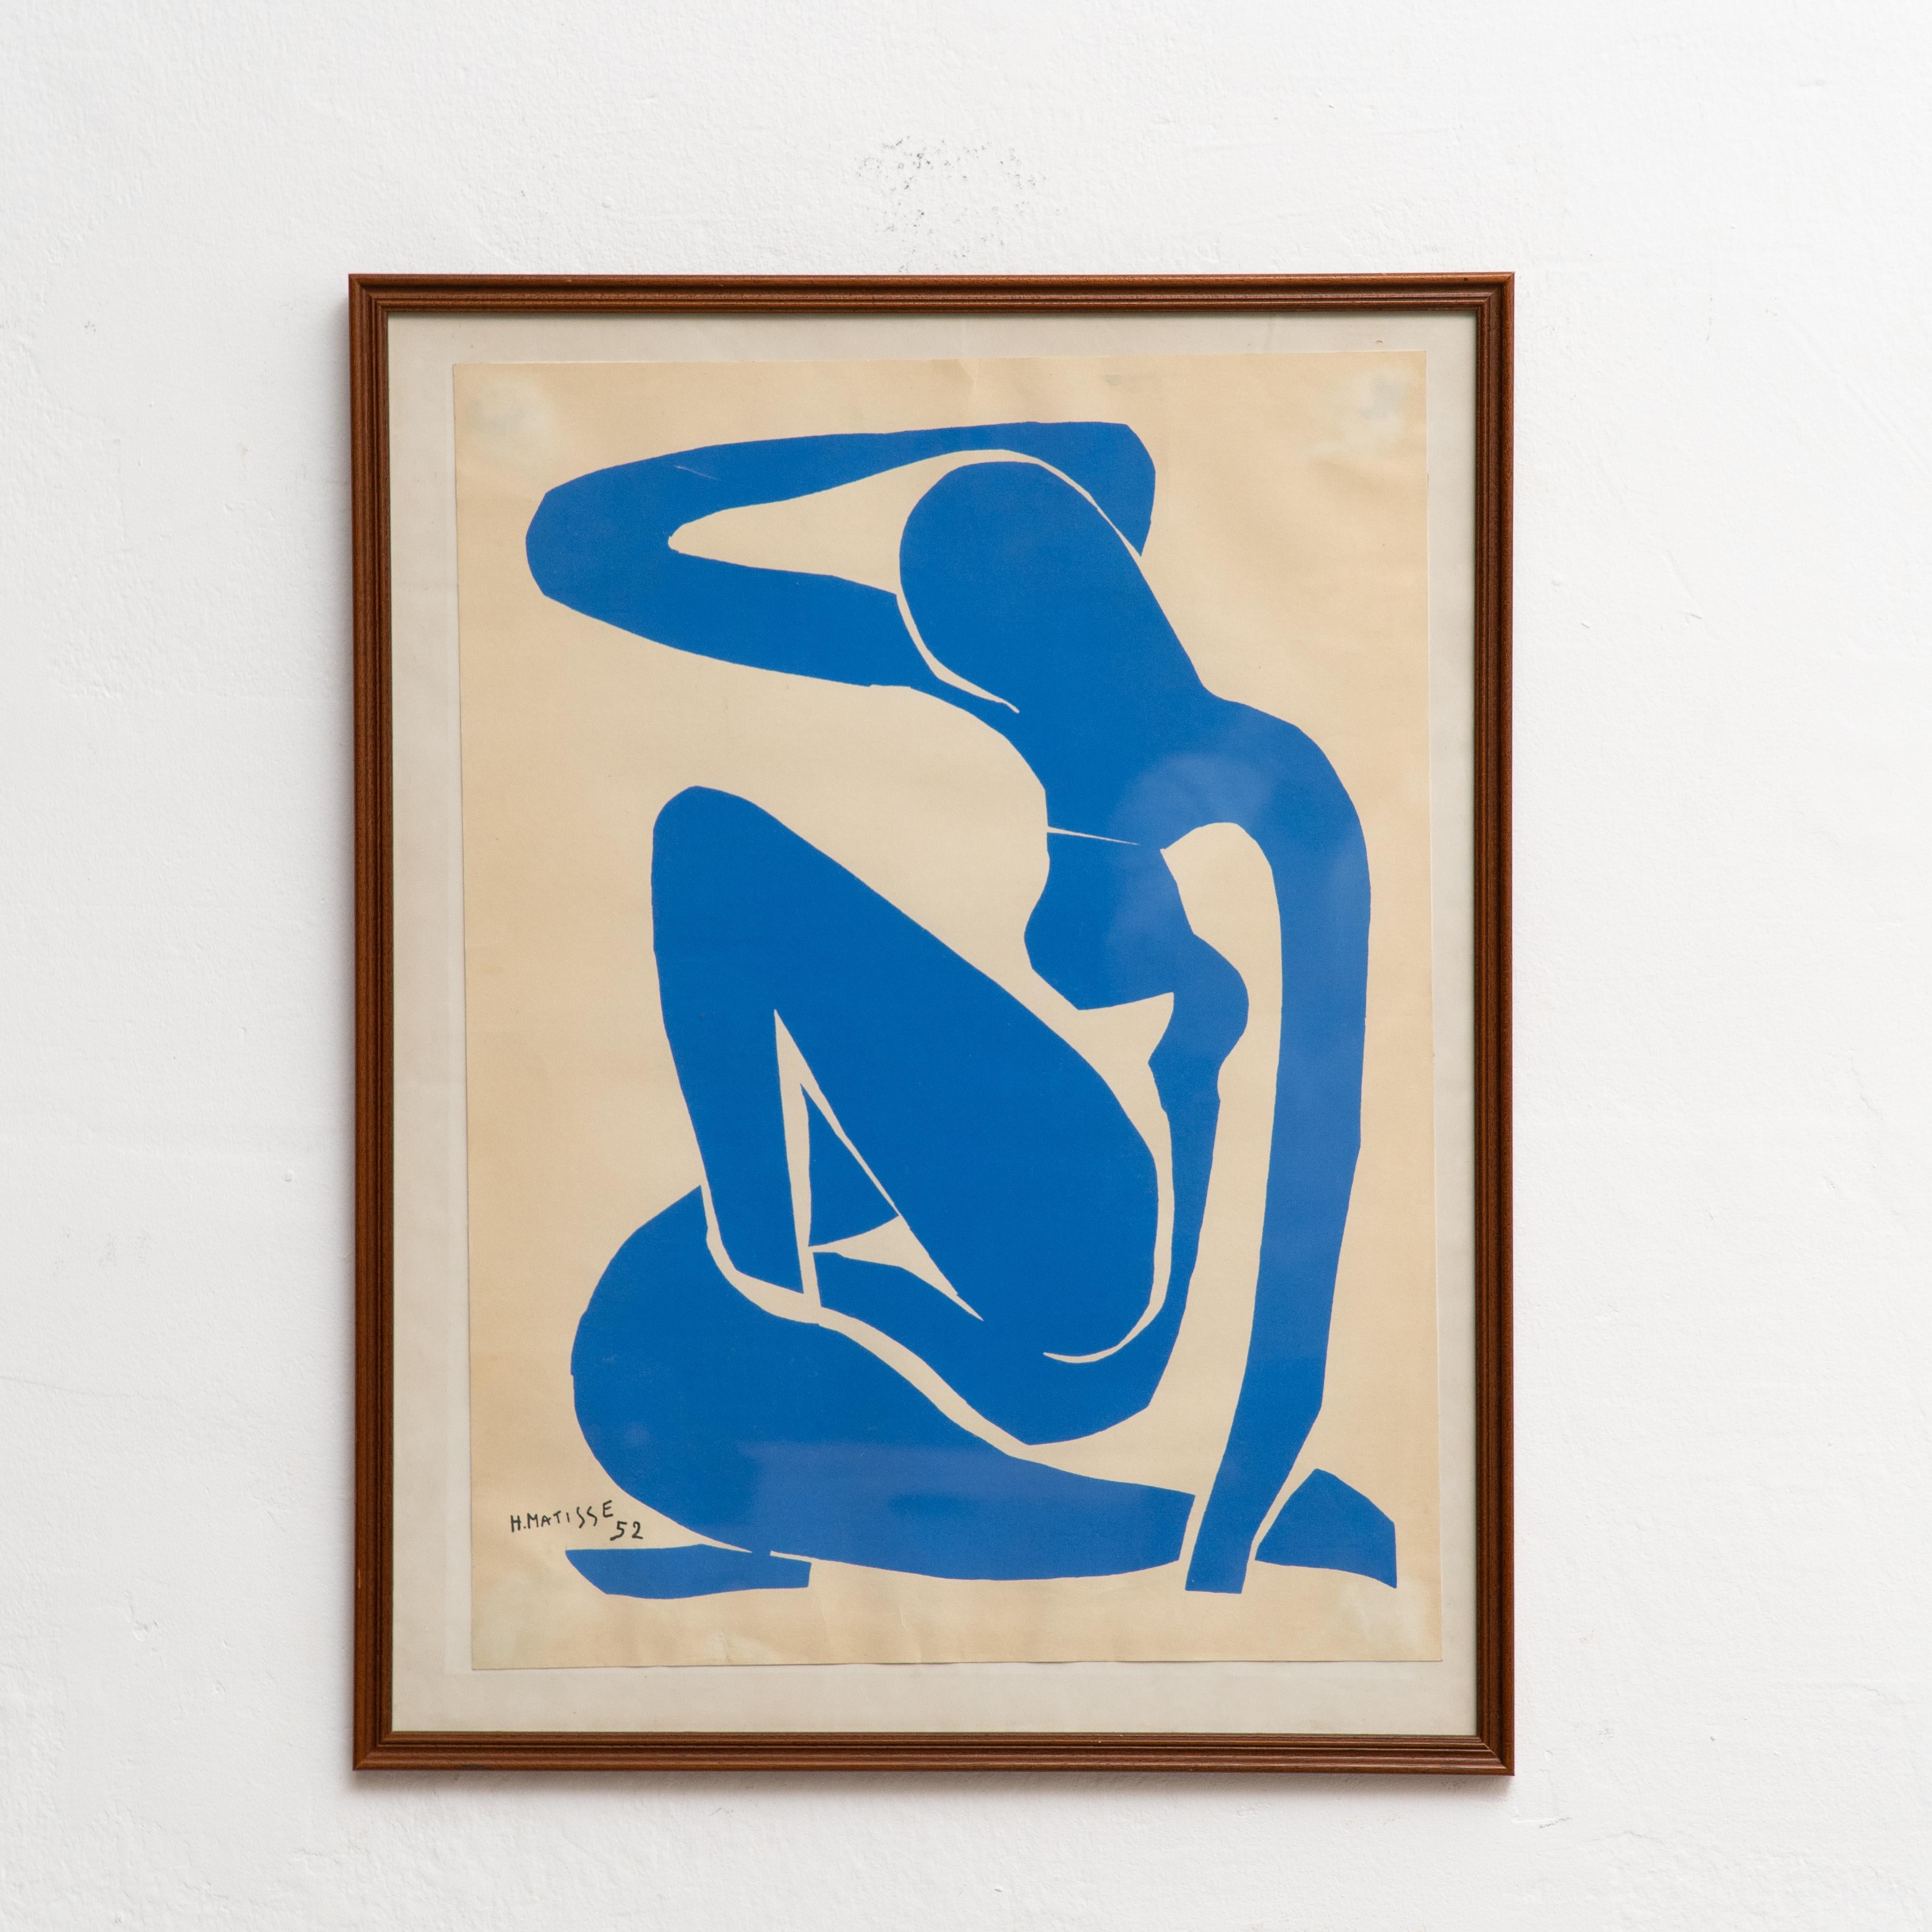 Farblithografie nach dem Werk von Henri Matisse, um 1970.

Im Stein signiert.
Herausgegeben von Edition des Nouvelles Images, Frankreich.
Gerahmt.

In gutem Zustand, mit Verschleiß im Einklang von Alter und Nutzung, die Erhaltung einer schönen